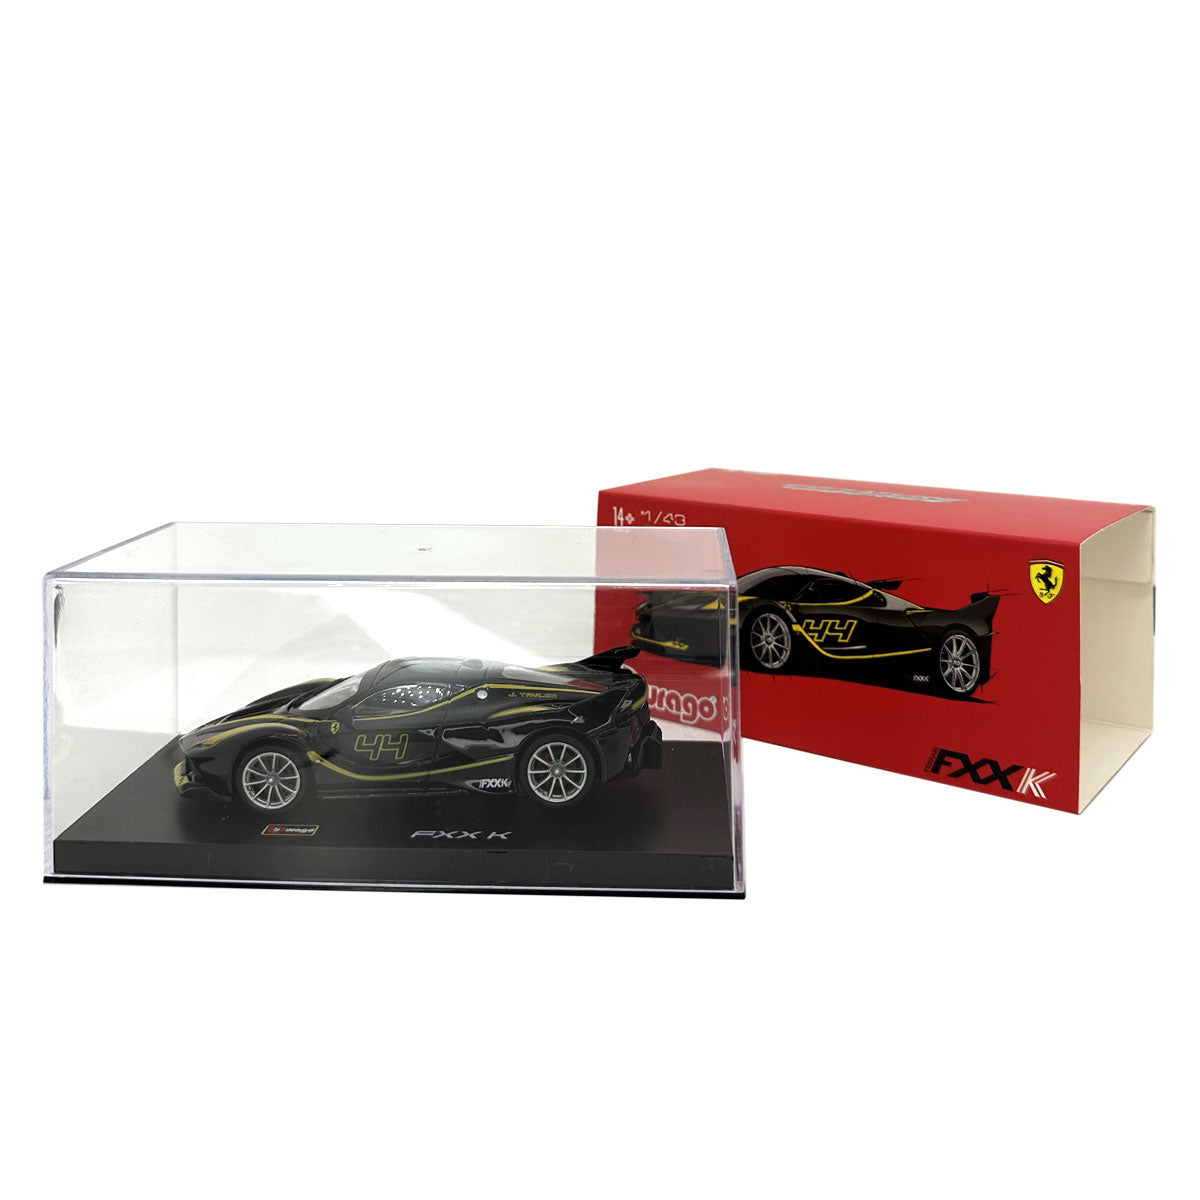 18-36906 (#44) - Bburago - 1:43 - Ferrari  Signature - Ferrari  FXX K